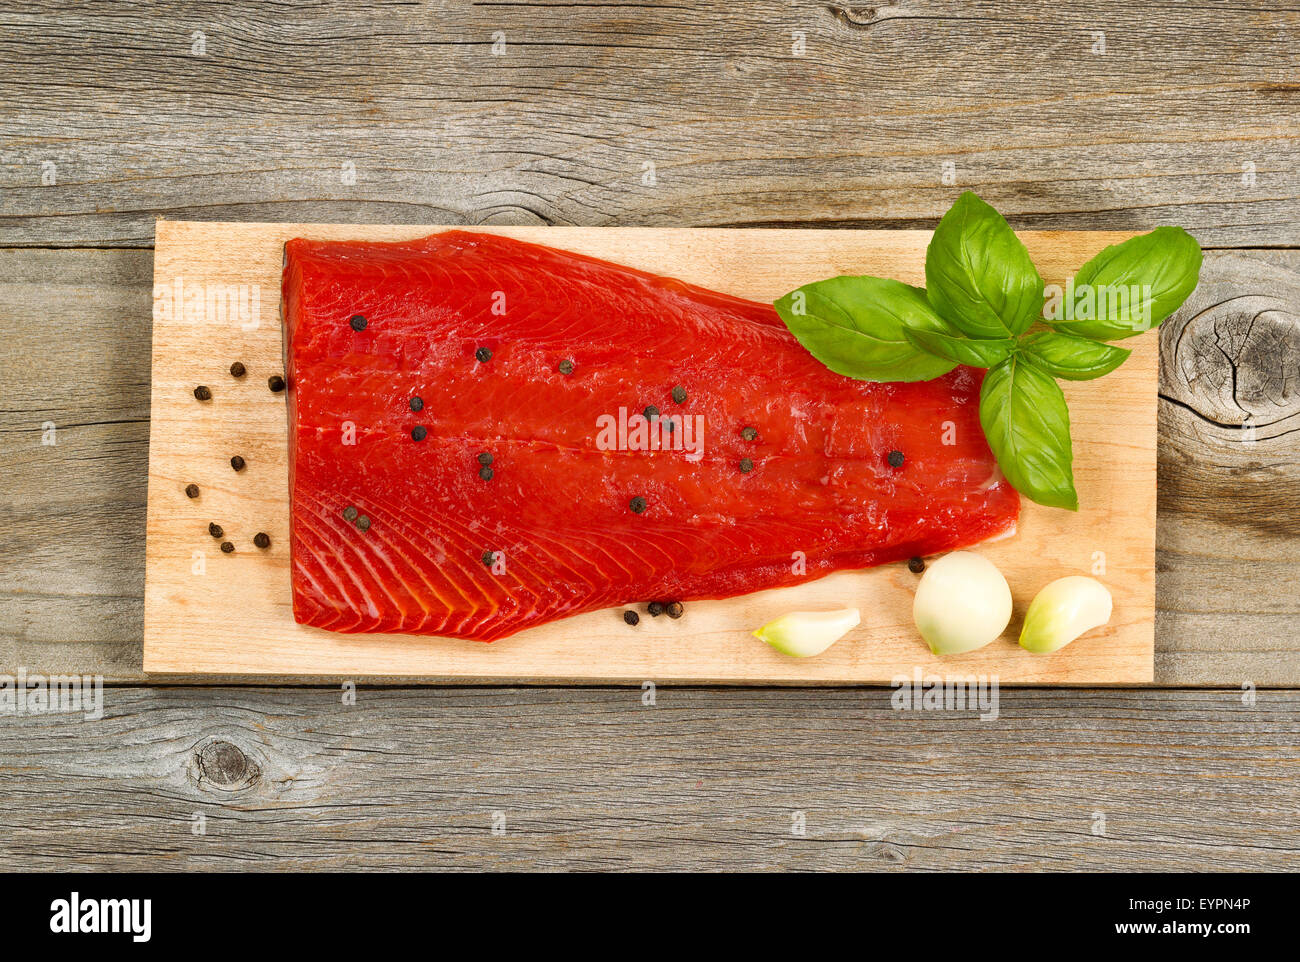 Vue de dessus coup de filet de saumon rouge frais sur la cuisson avec du cèdre, poivre l'ail et le basilic. Bois vieilli en dessous. Banque D'Images